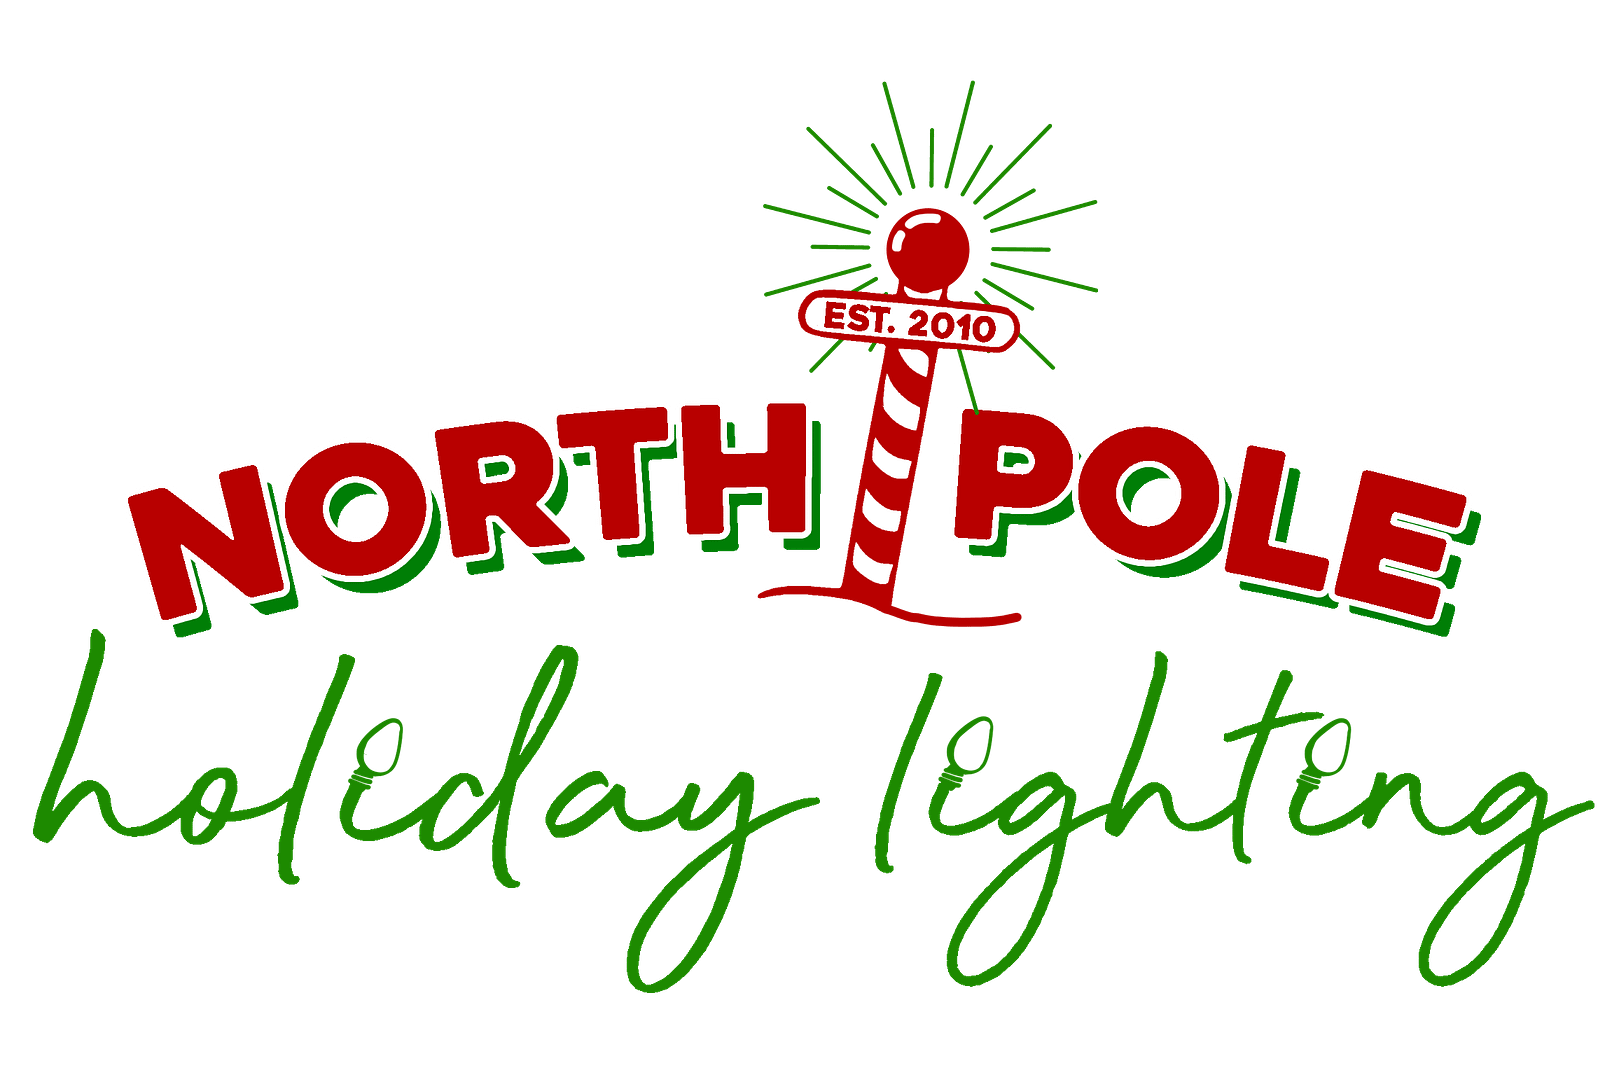 North Pole Holiday Lighting